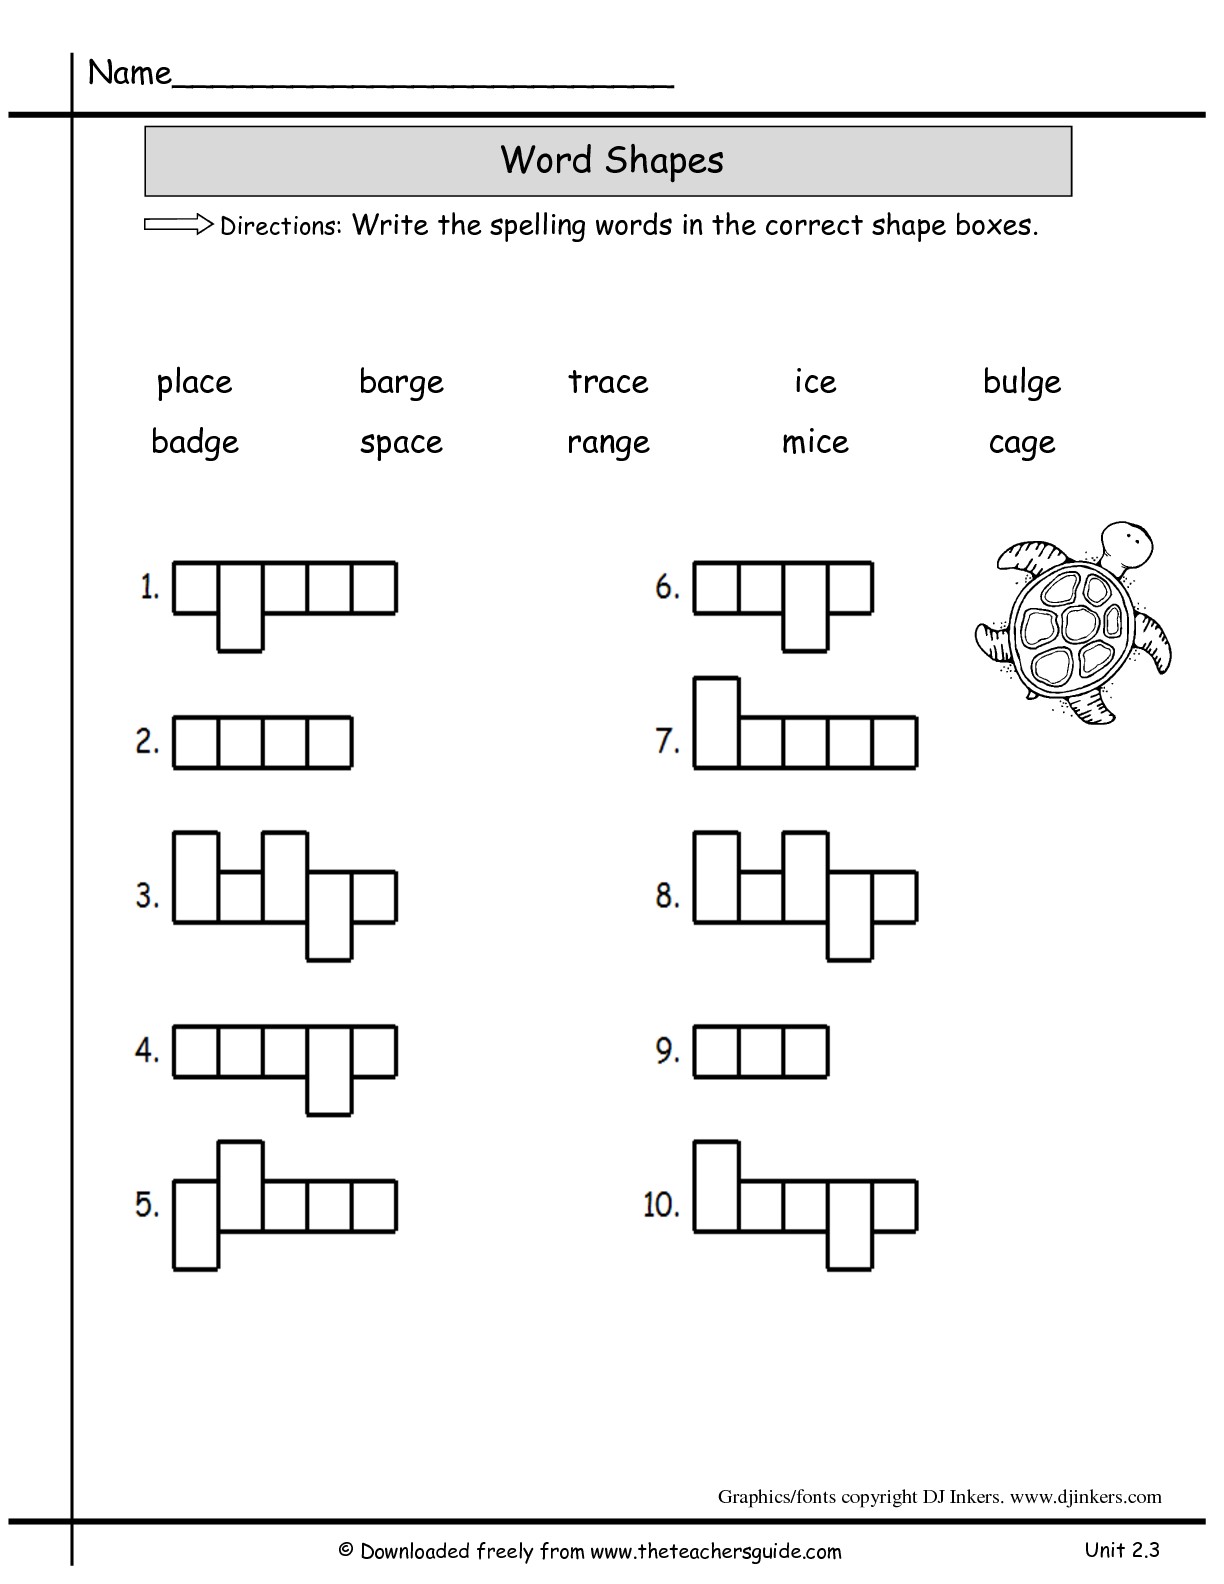 2nd Grade Spelling Worksheets Image